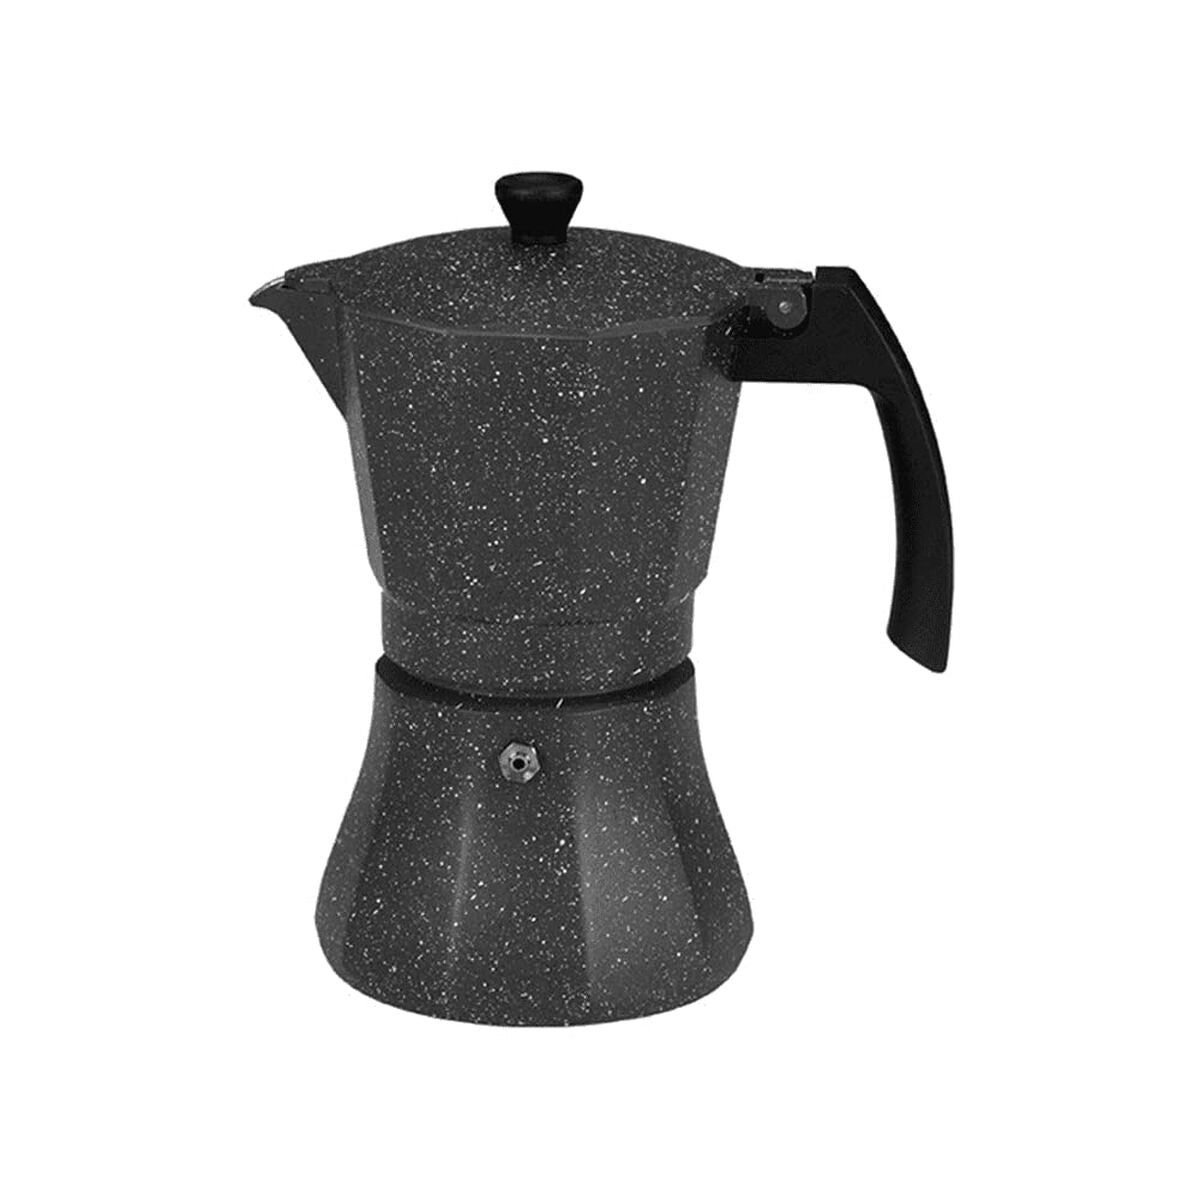 Kahvinvalmistaja EDM Black Alumiini (kahvinvalmistaja)